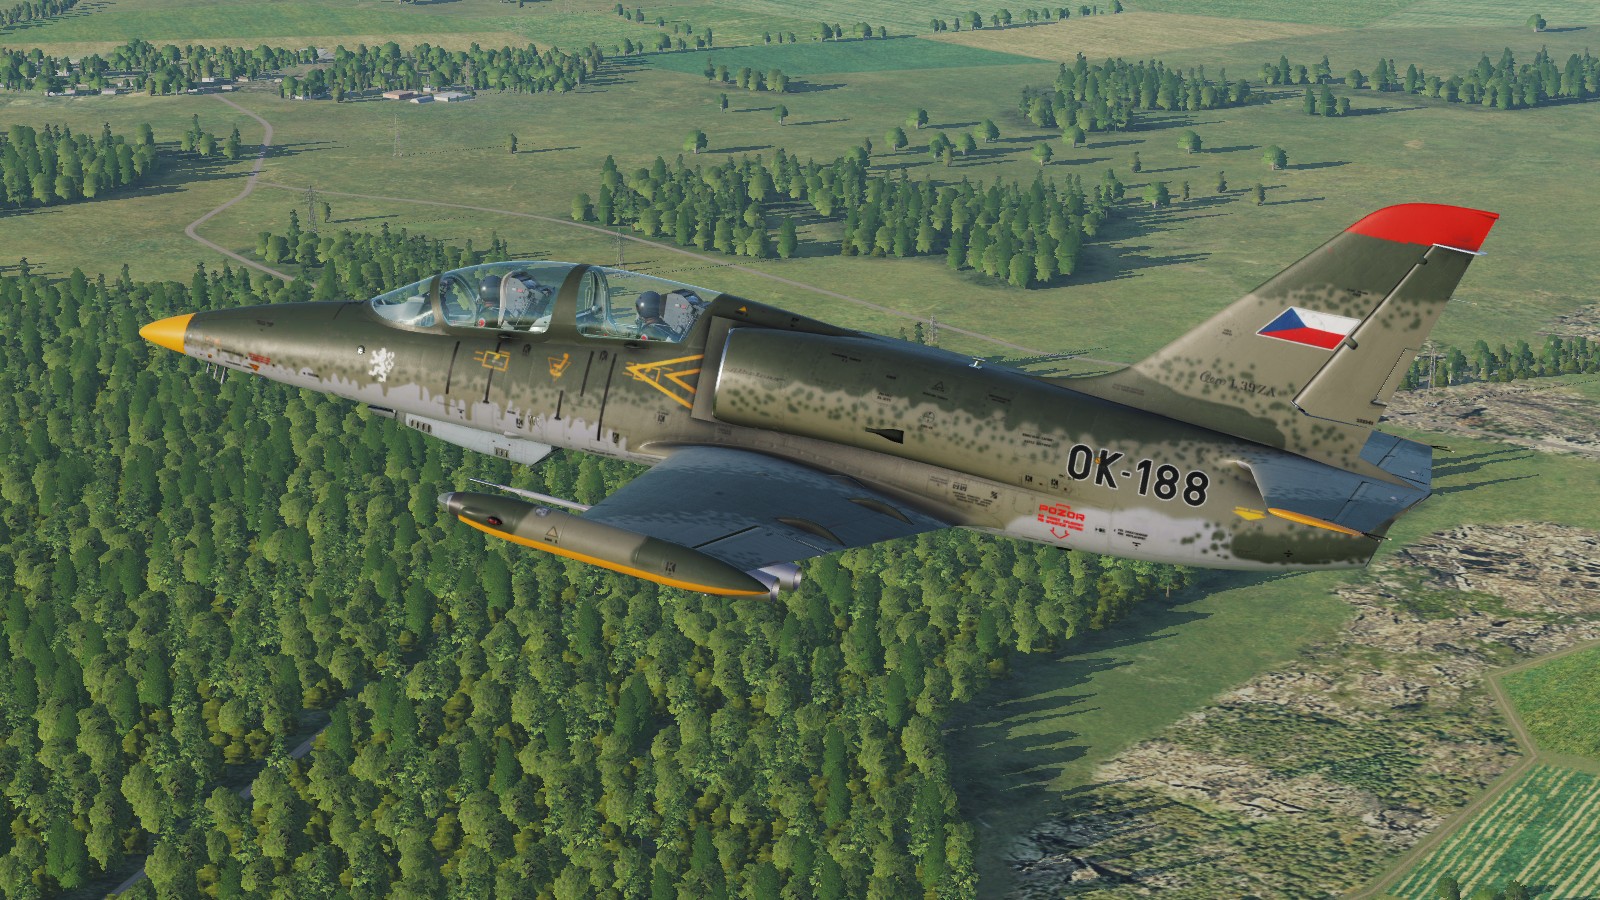 L-39ZA Albatros Skin pak